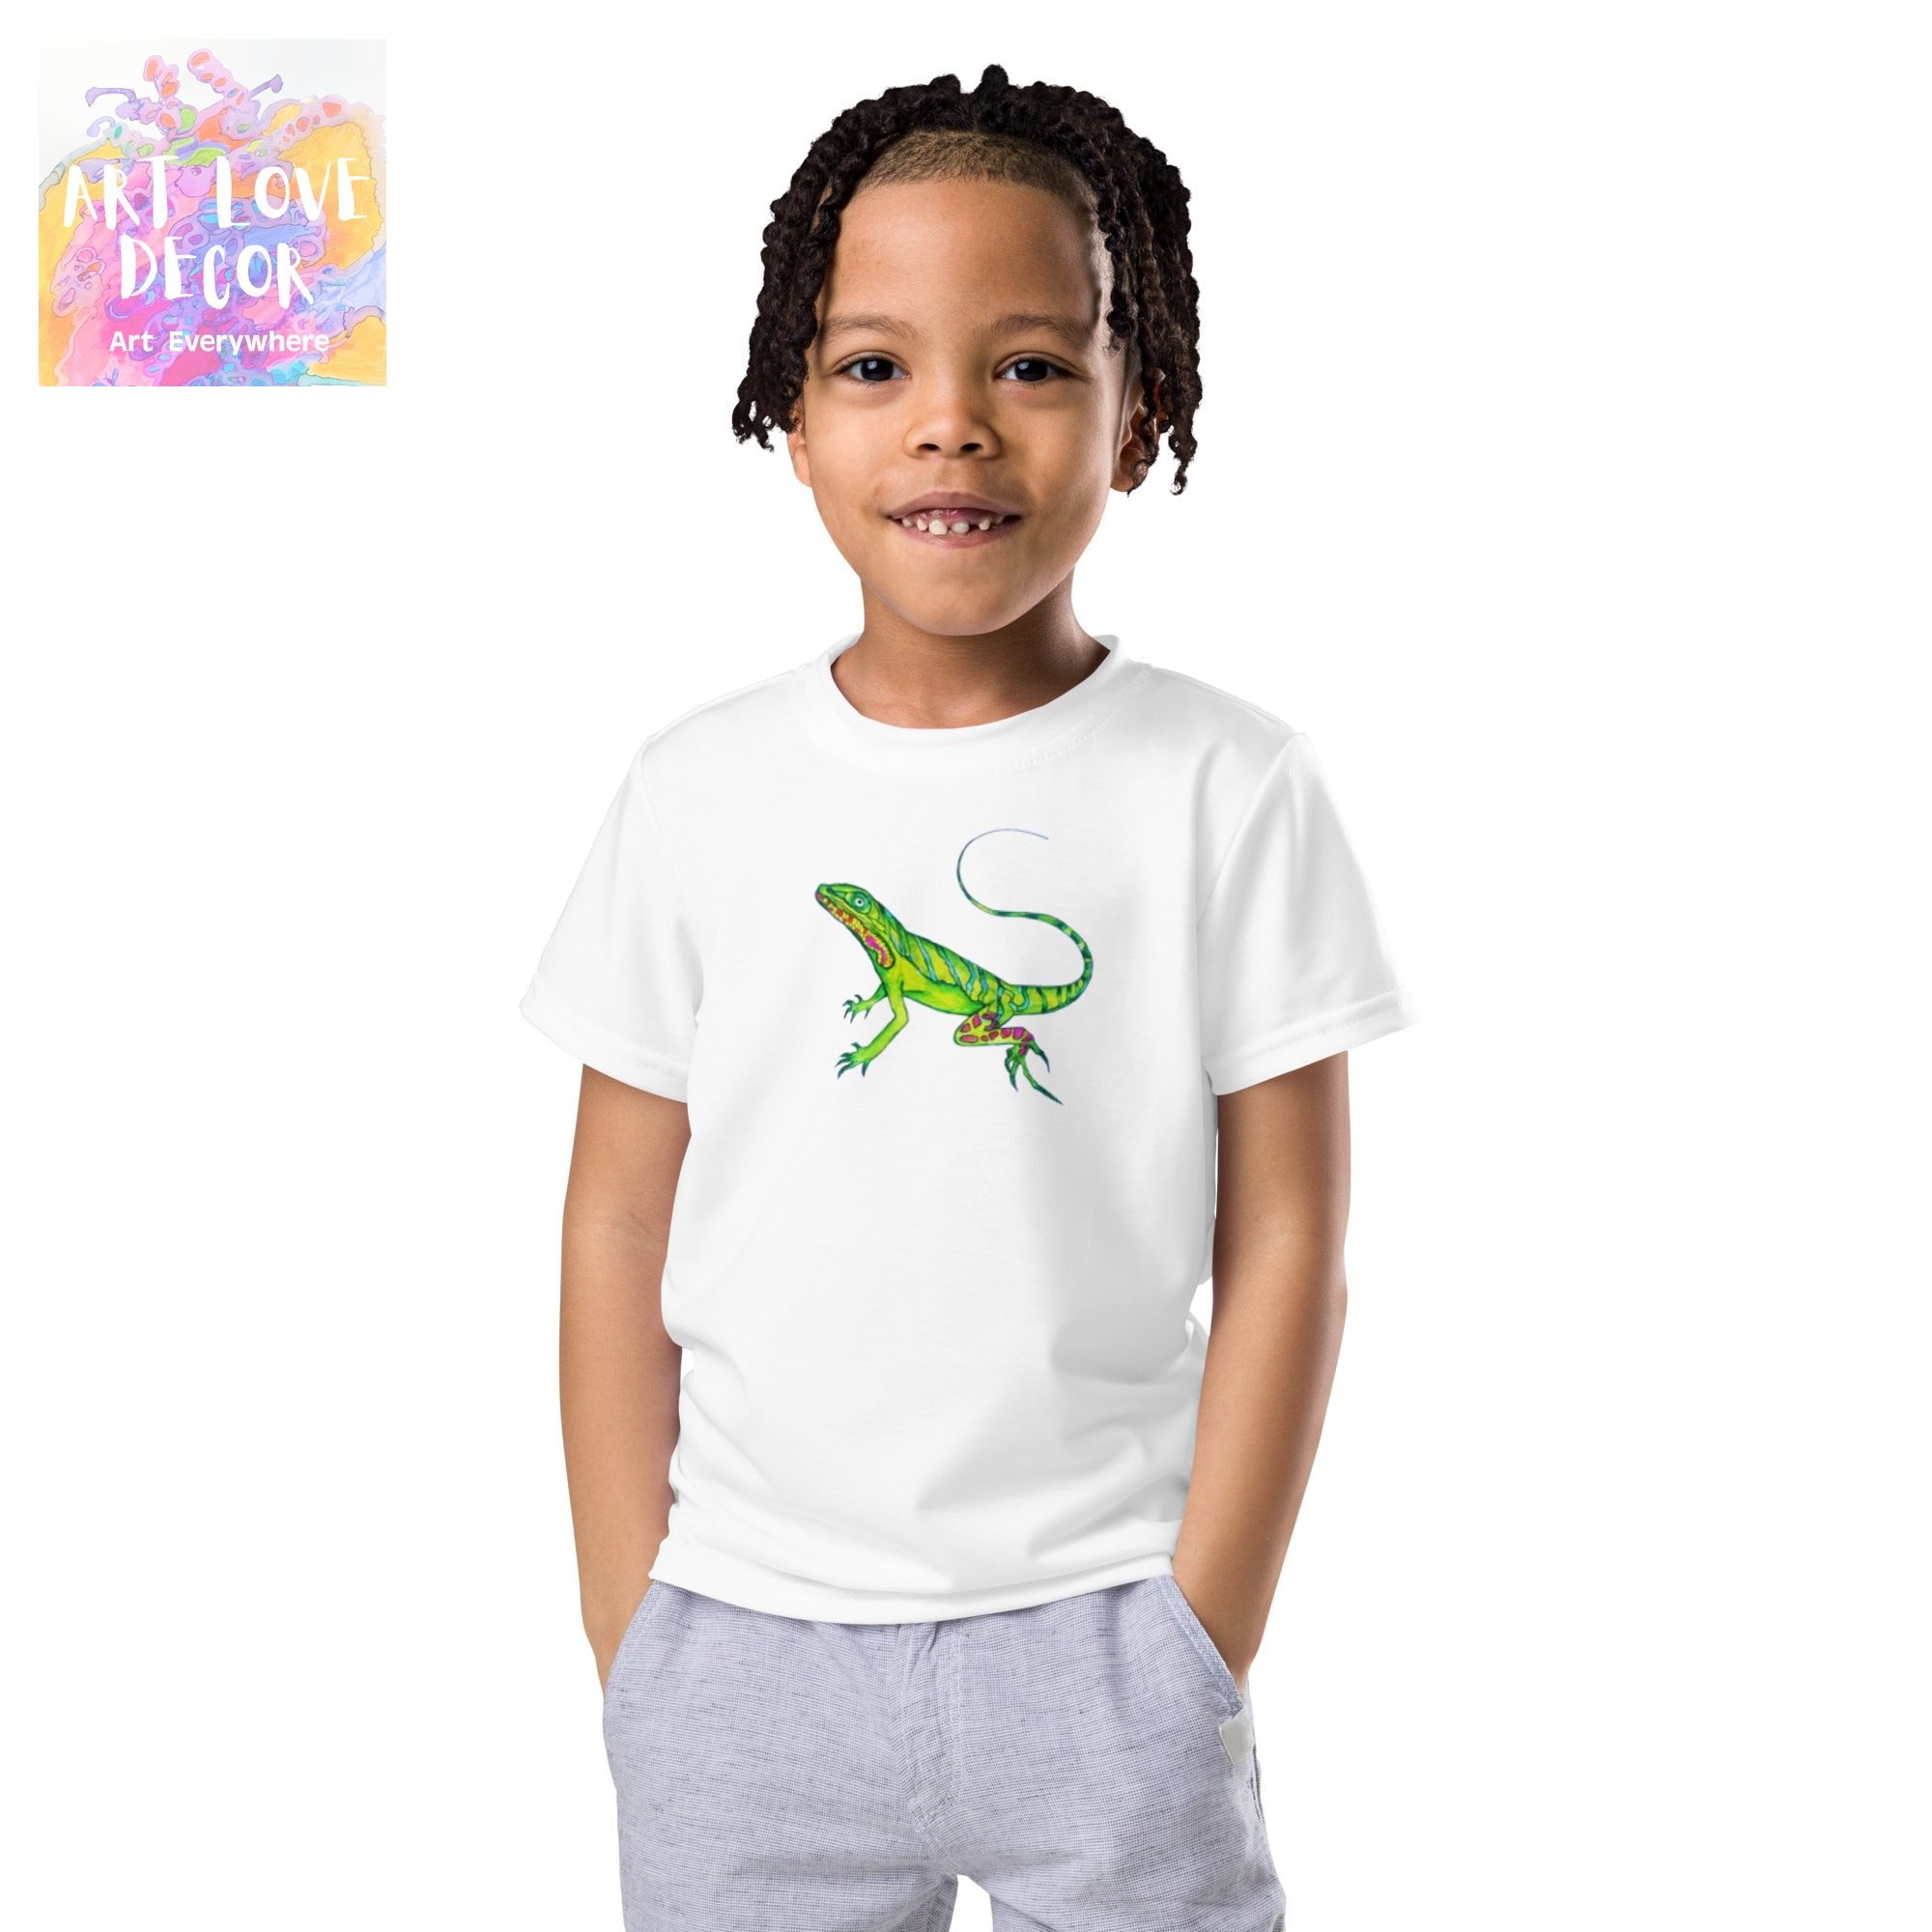 Lizard Kids crew neck t-shirt - Art Love Decor